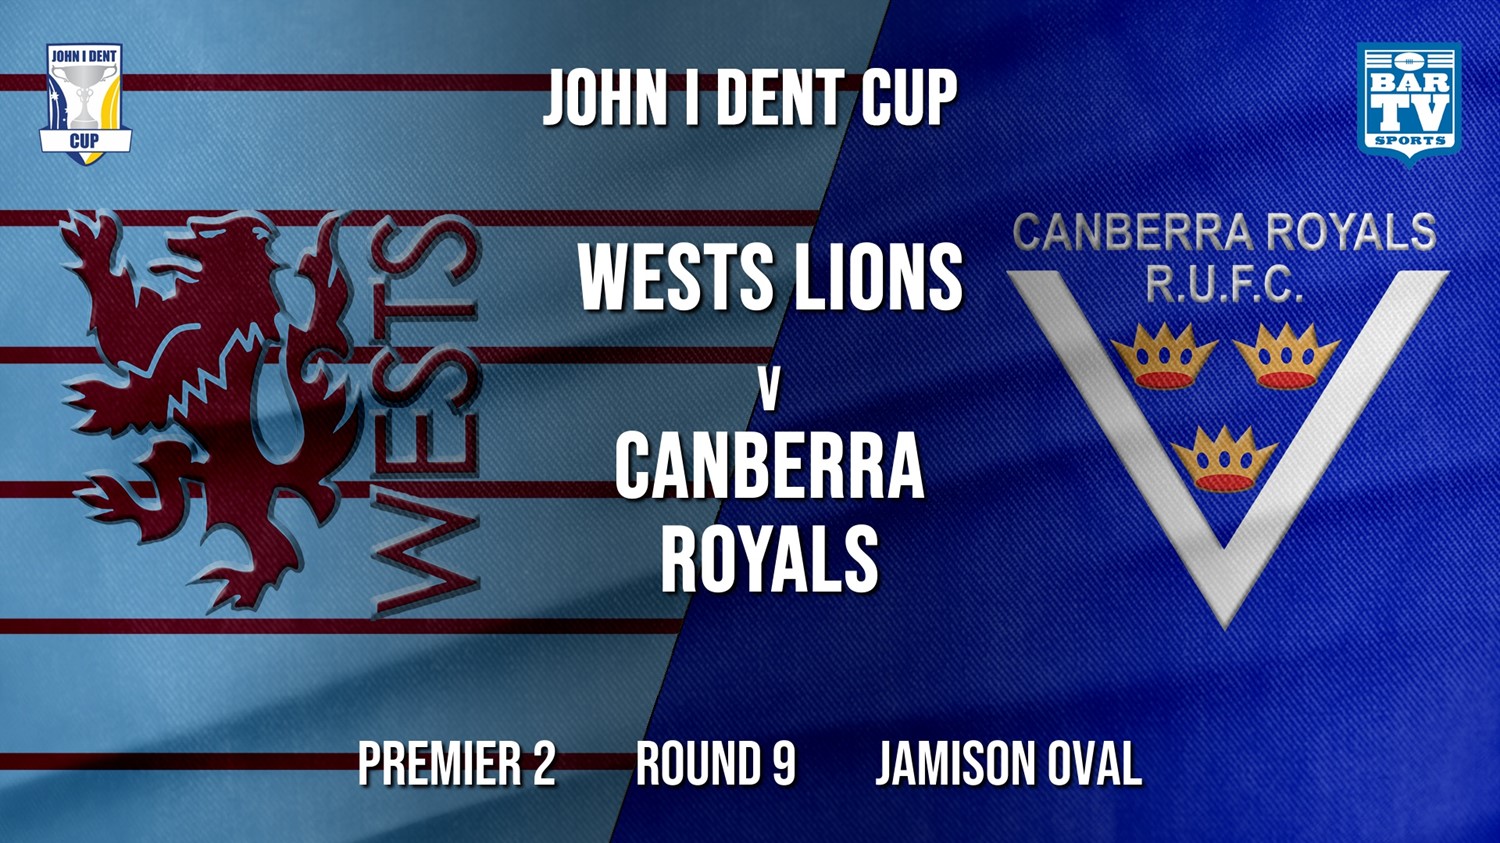 John I Dent Round 9 - Premier 2 - Wests Lions v Canberra Royals Minigame Slate Image